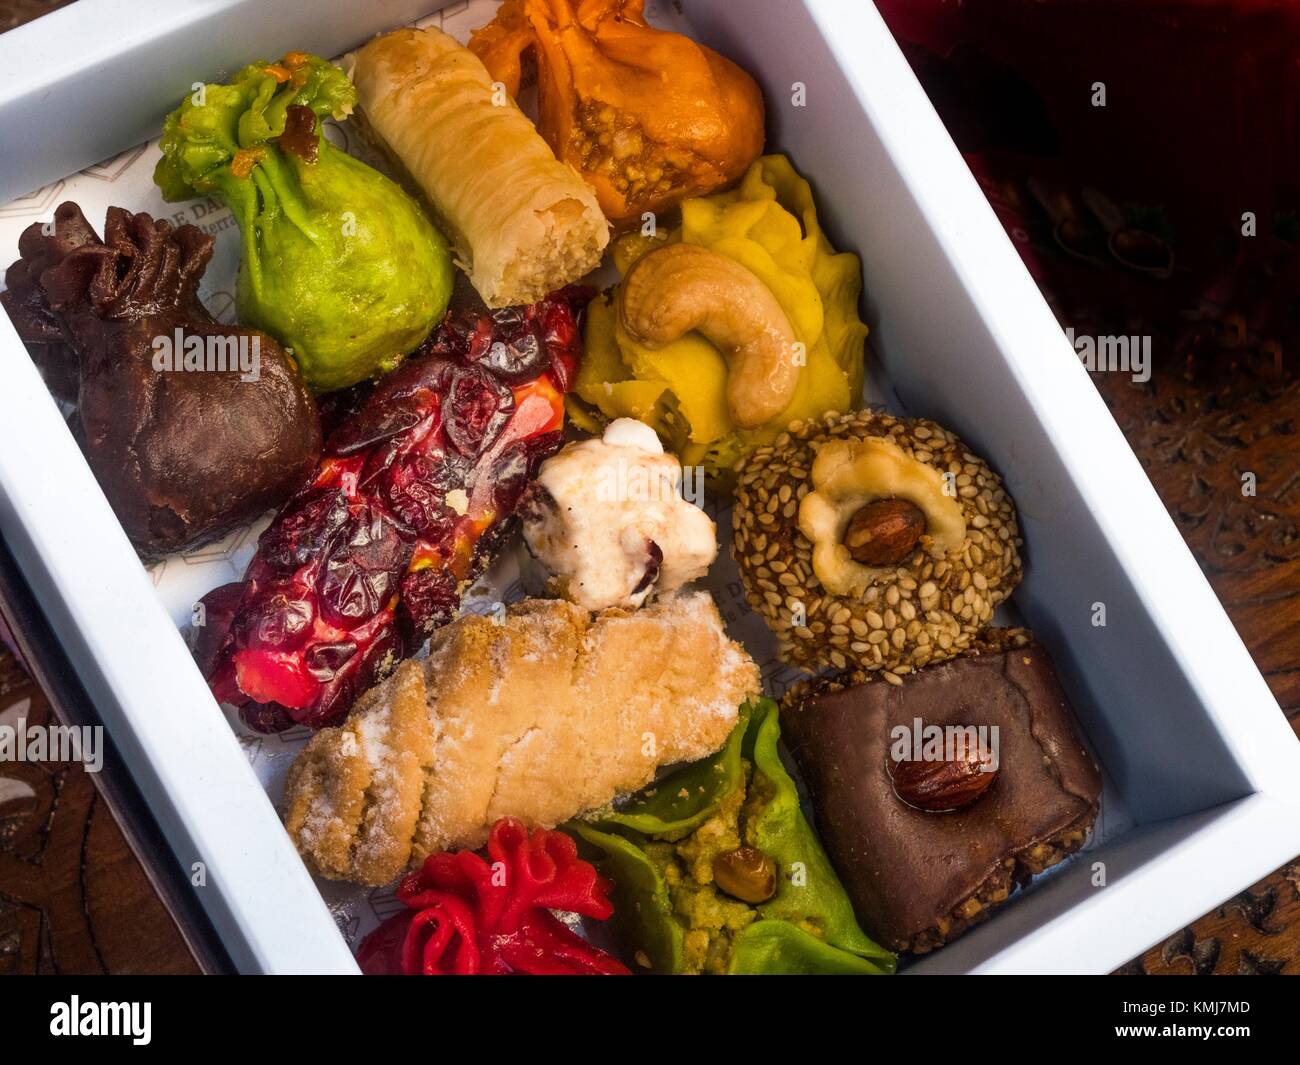 Syria food immagini e fotografie stock ad alta risoluzione - Alamy